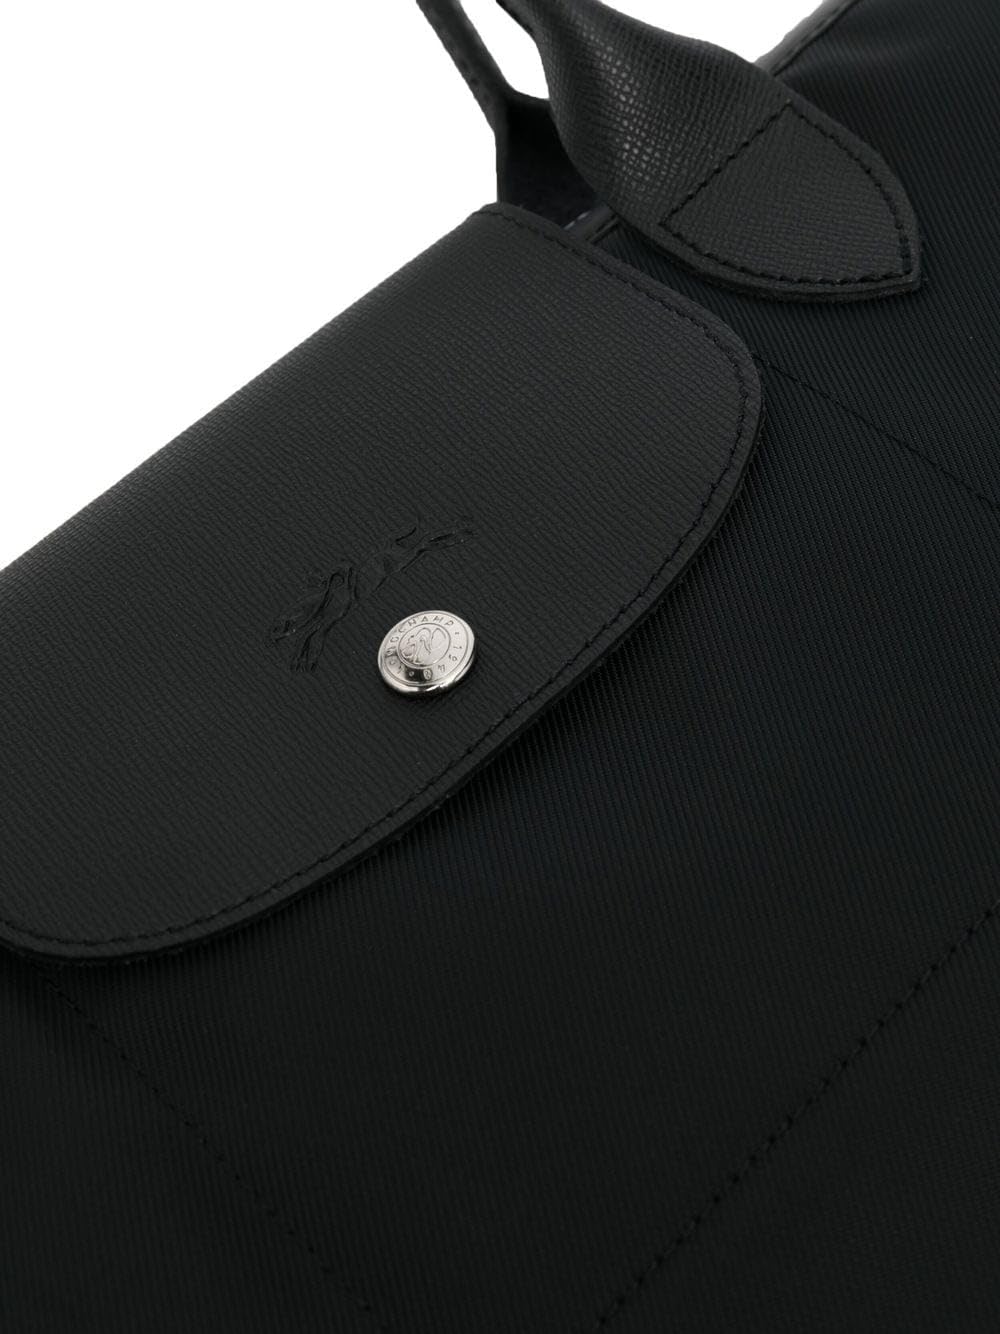 Longchamp Le Pliage Energy Large Tote Shoulder Bag, Black, Canvas